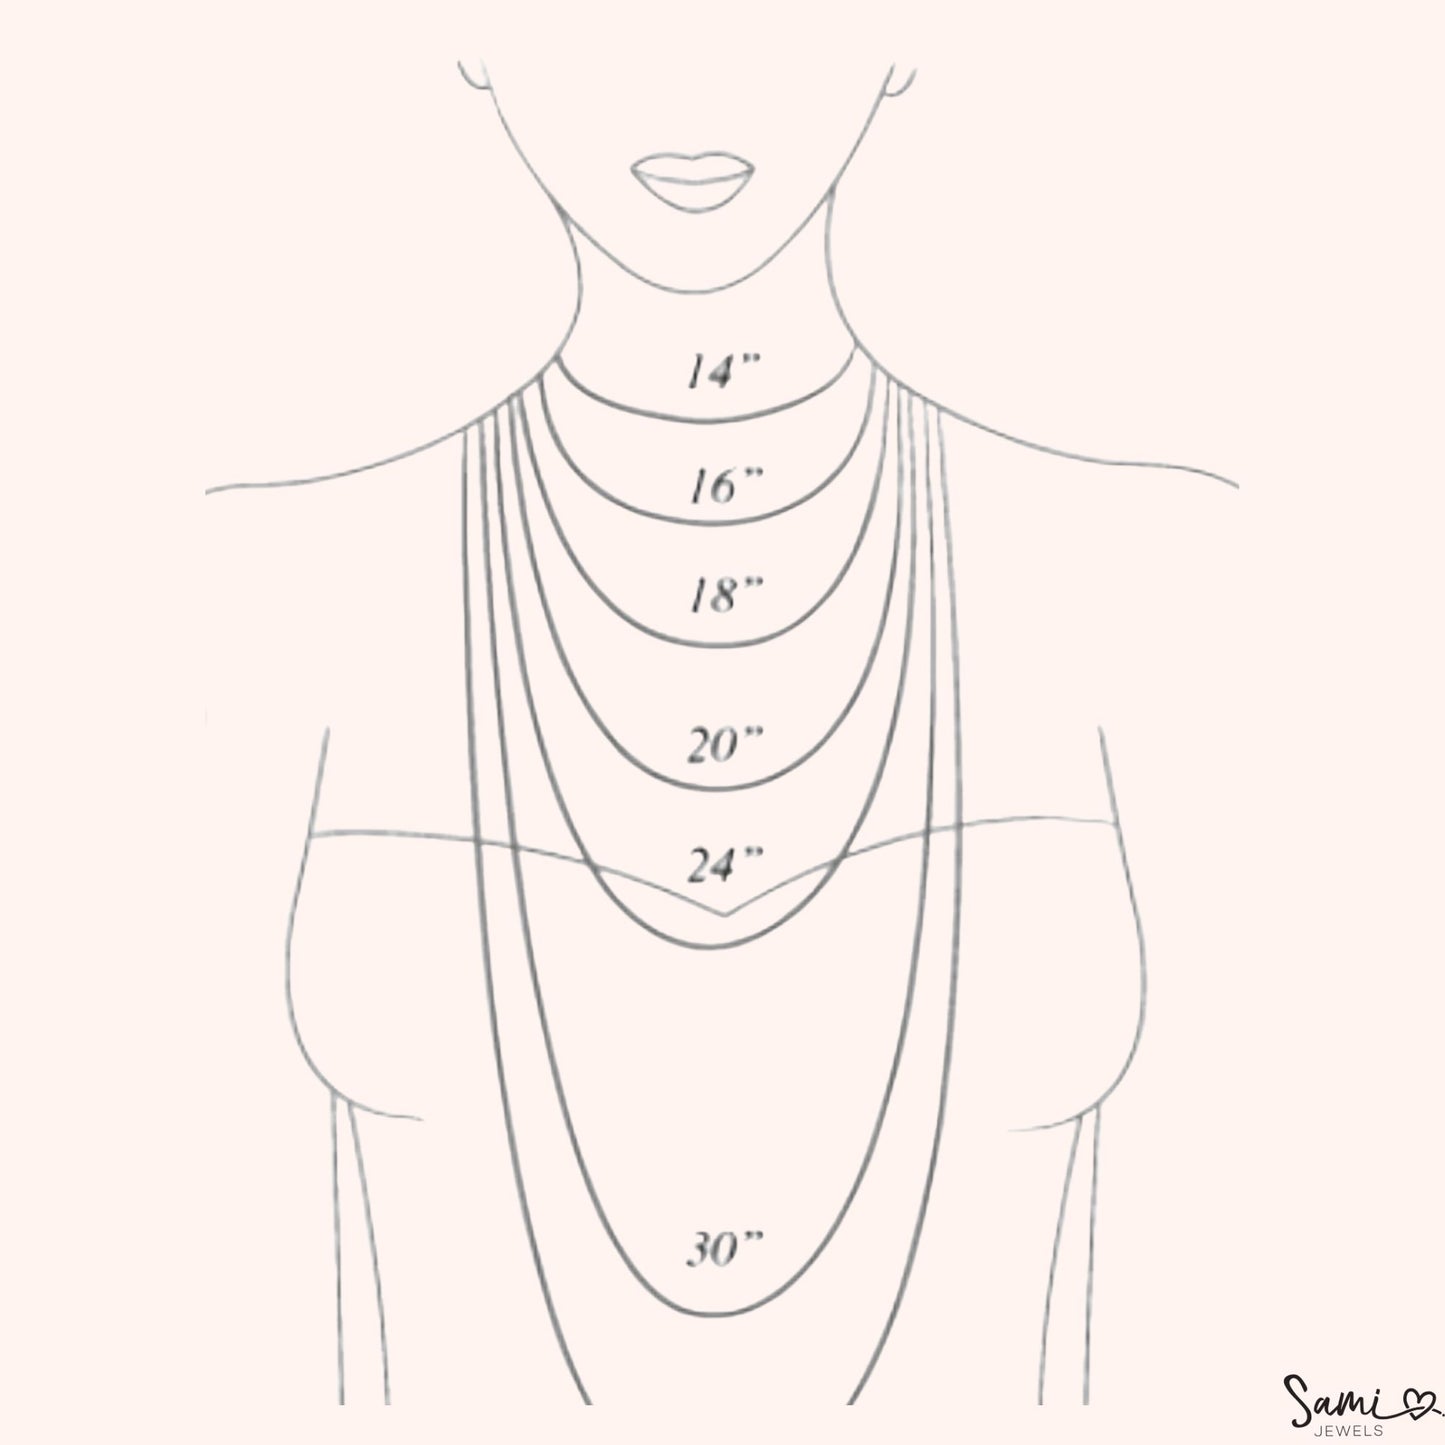 Plain Initial Necklaces